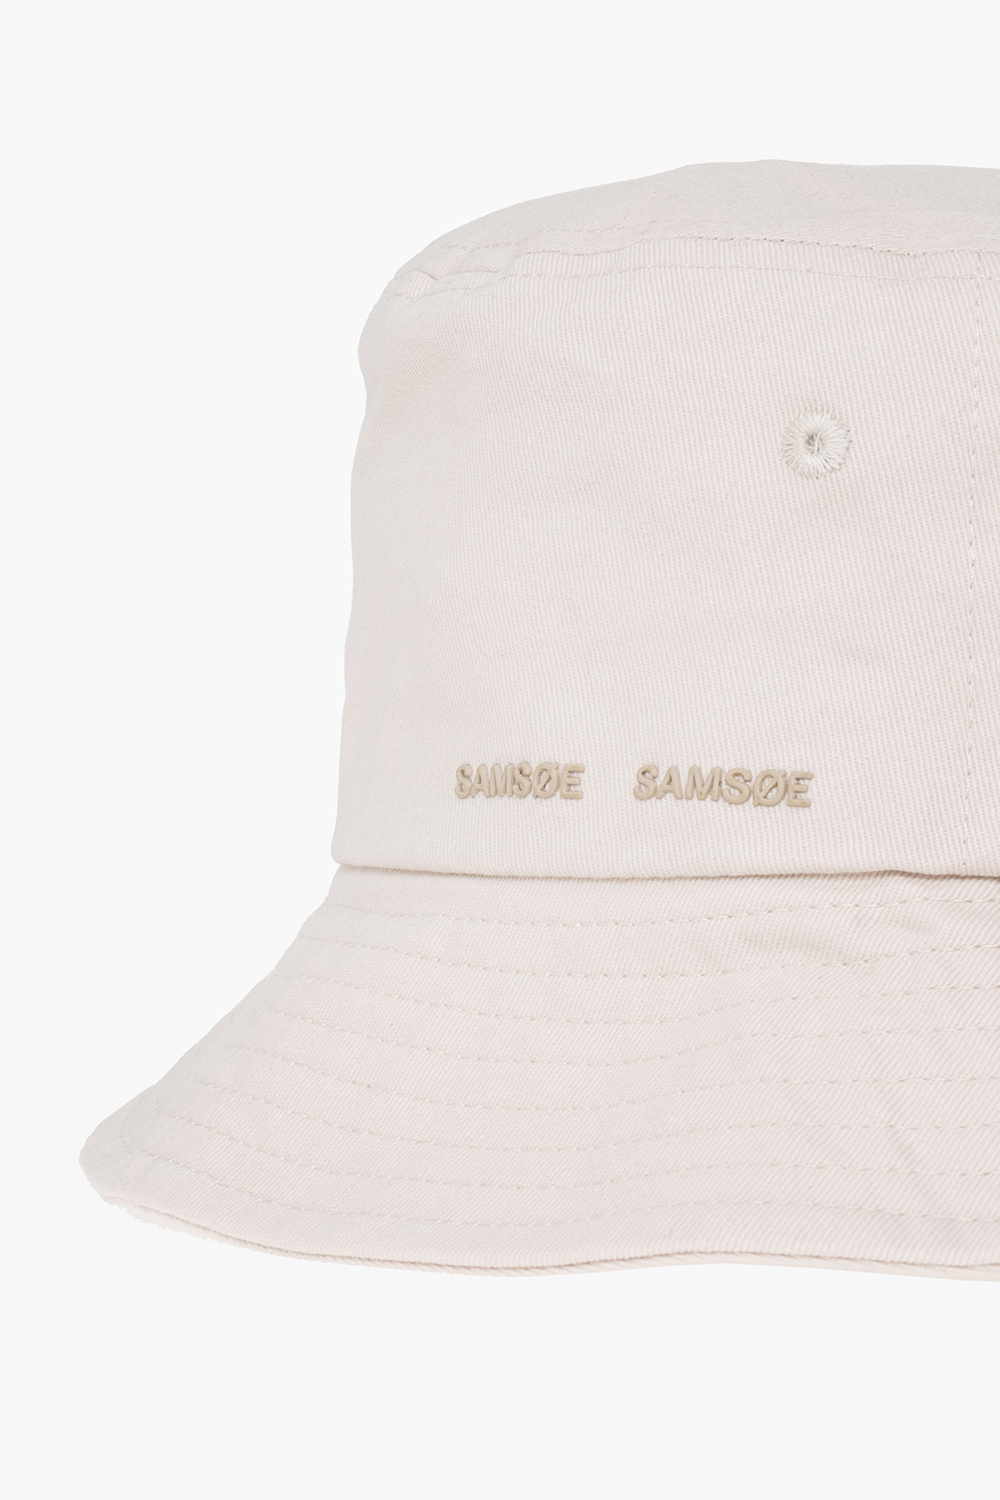 Samsøe Samsøe ‘Anton’ bucket Ellesse hat